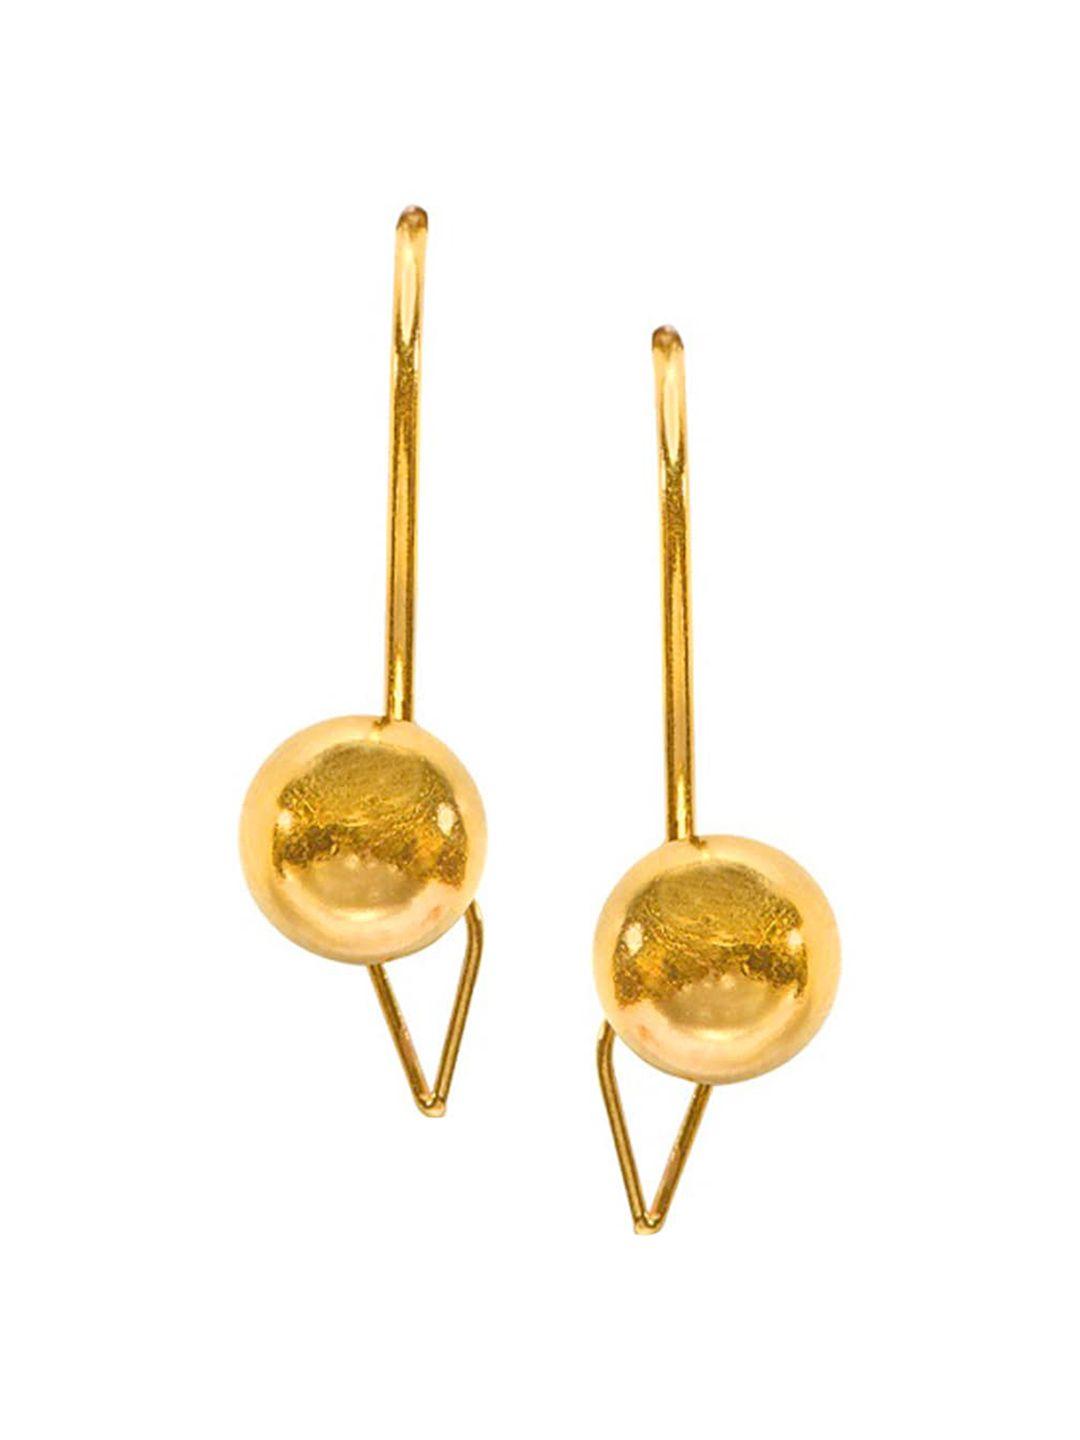 senco-shiny-textured-22kt-gold-earrings-1.7gm